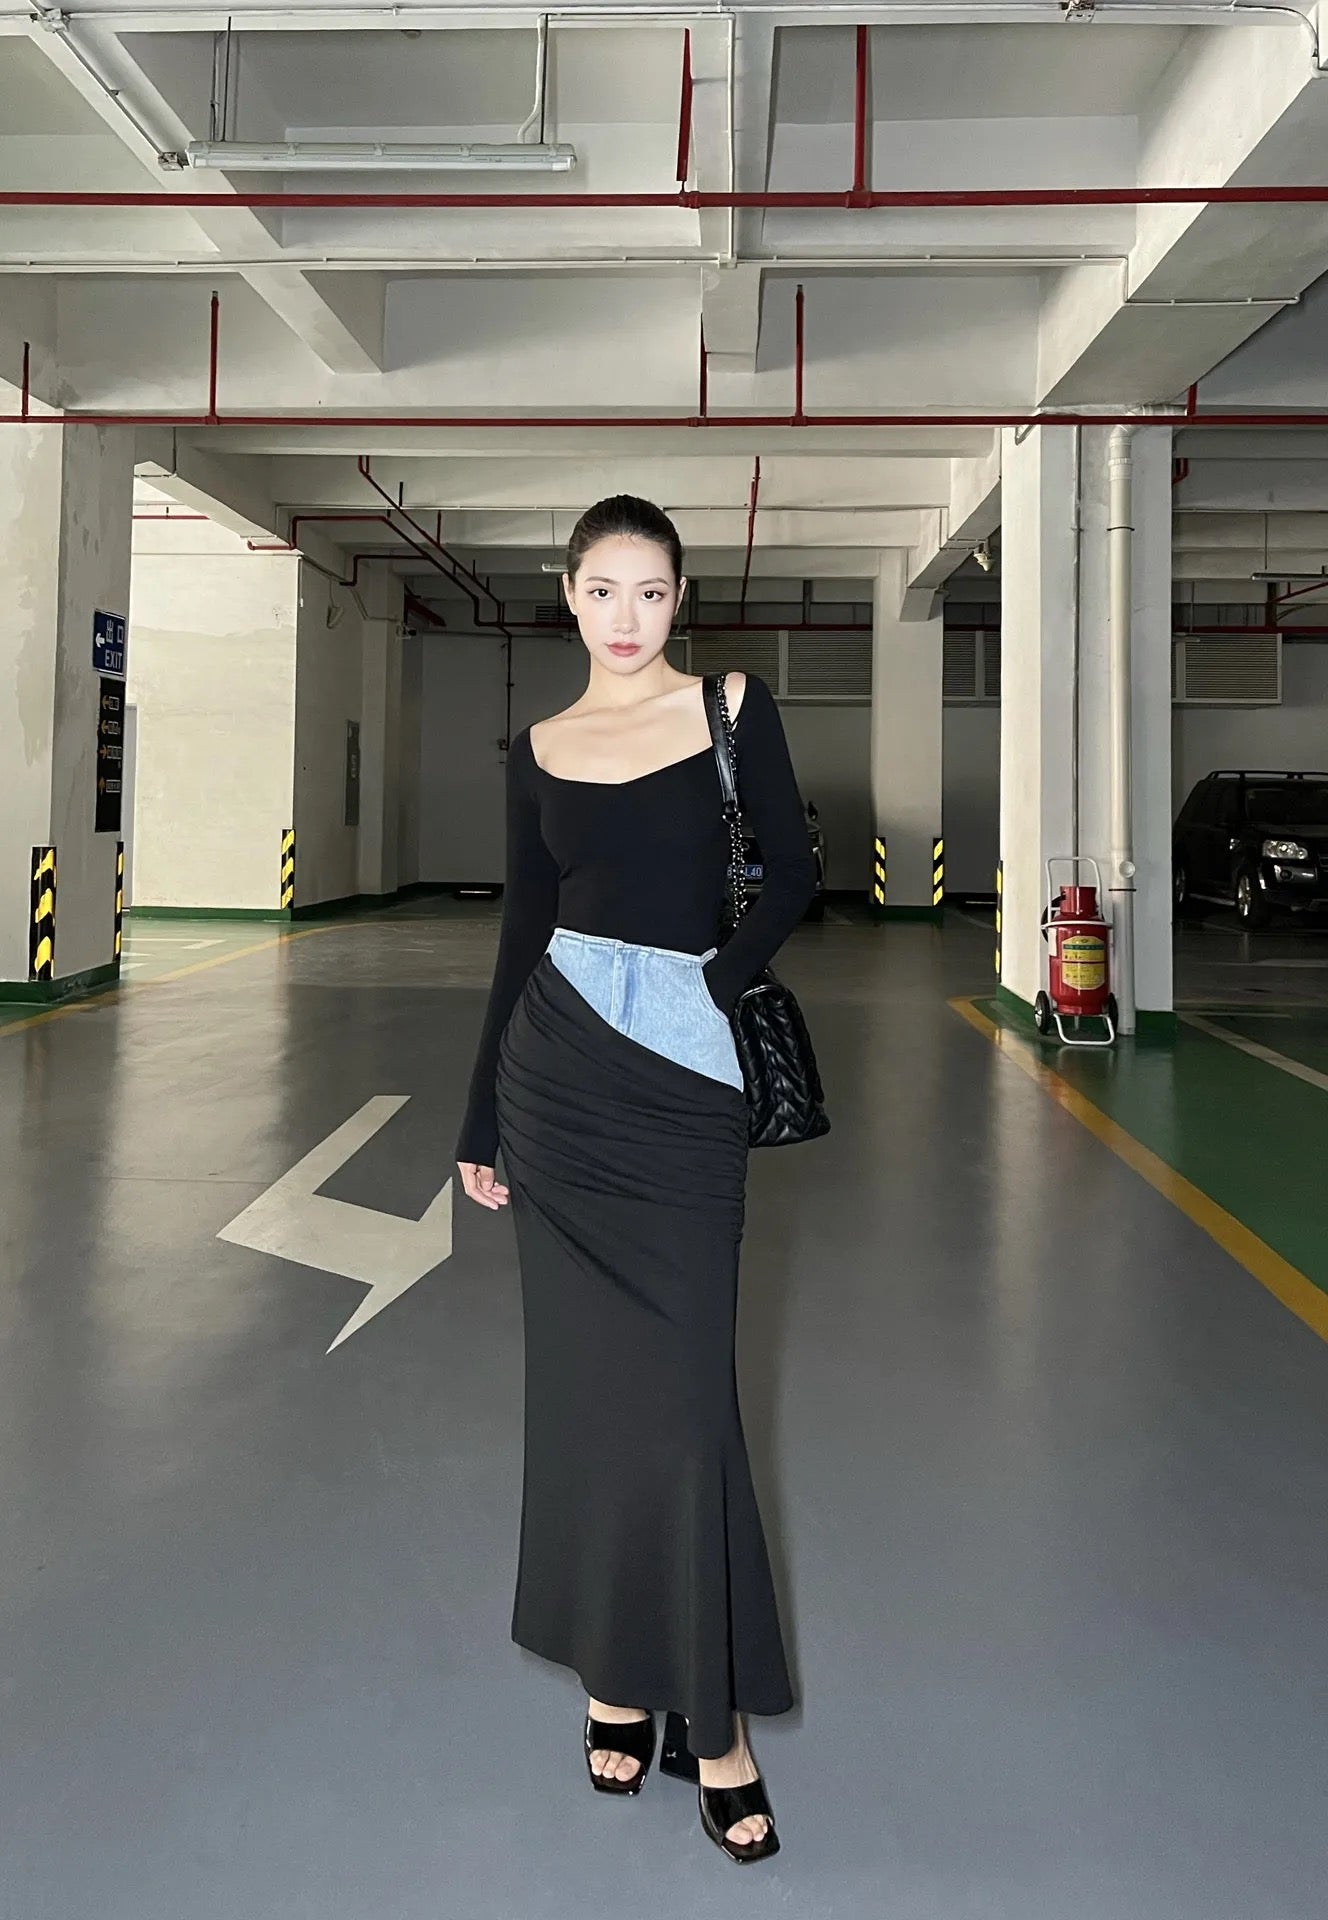 CM-BS023114 Women Preppy Seoul Style Black Pleated Long Denim Skirt